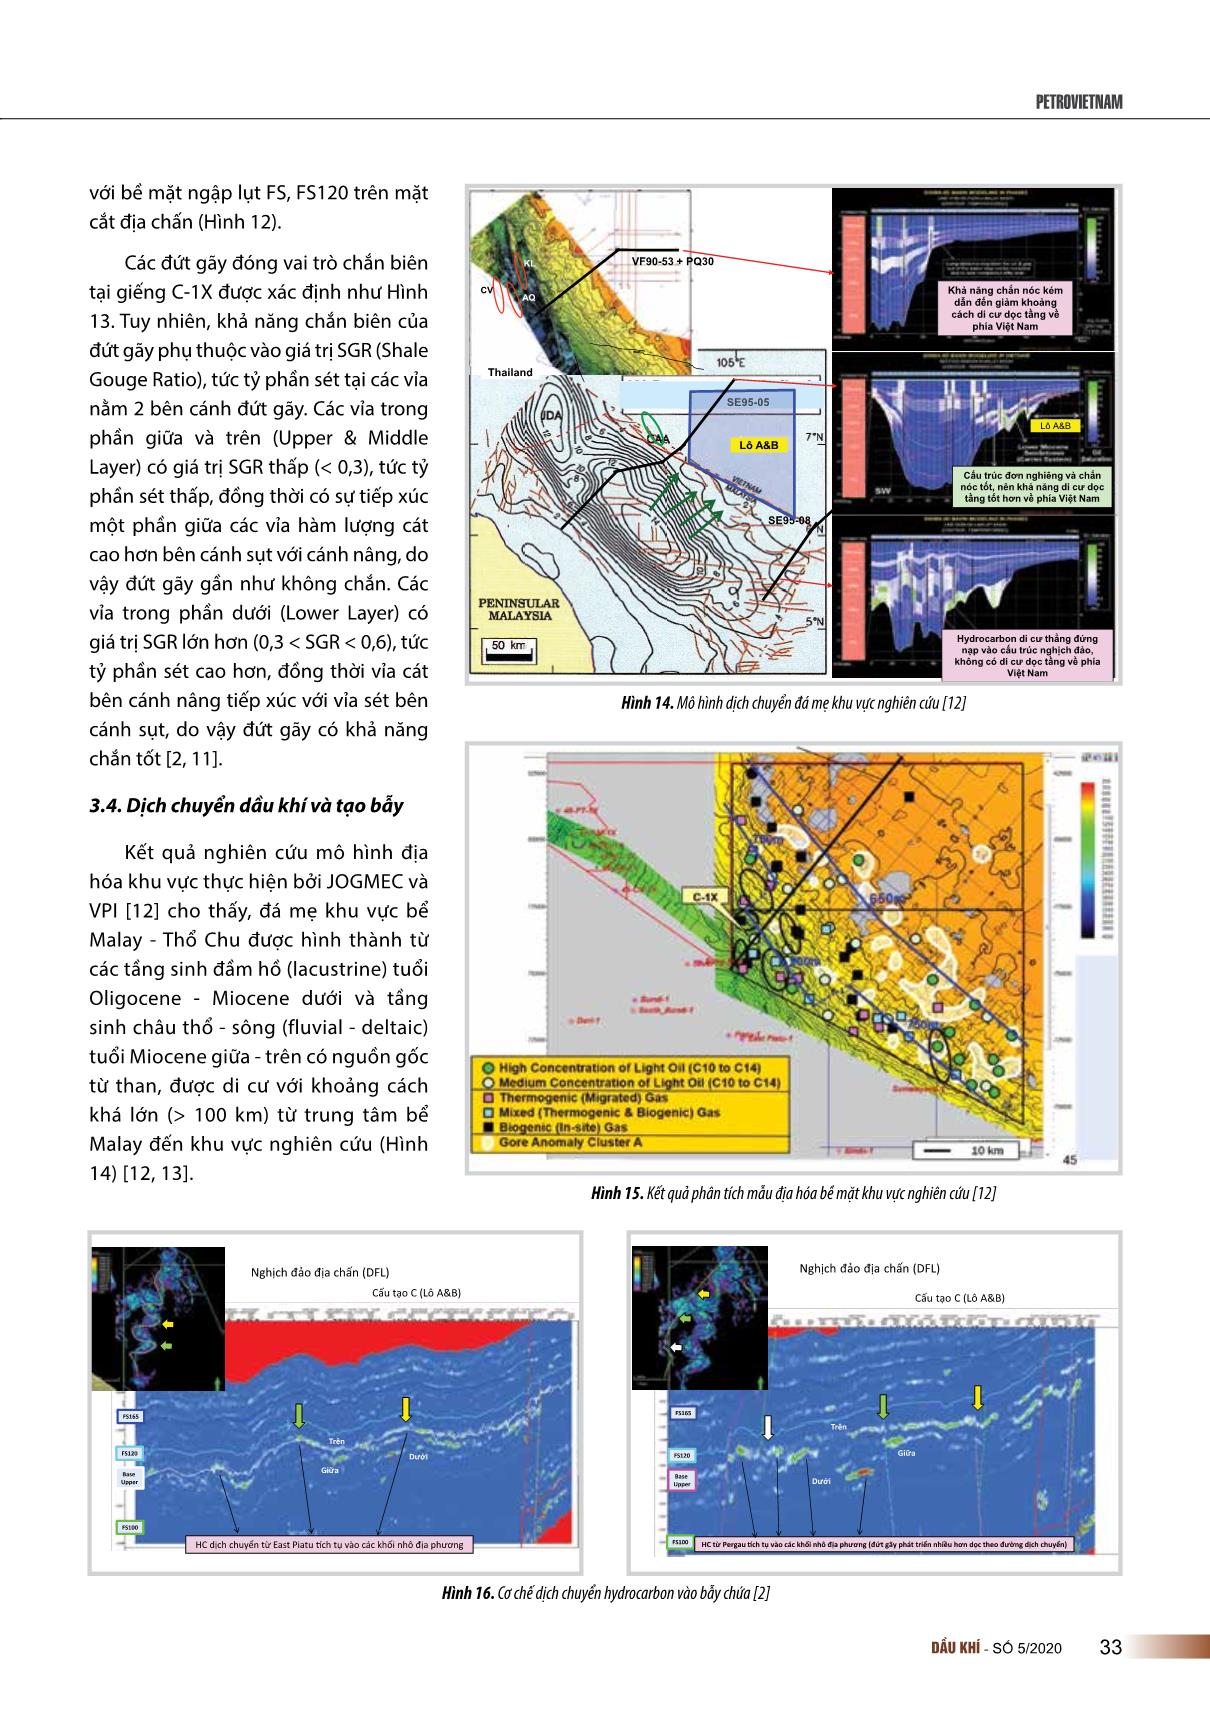 Đặc điểm hệ thống dầu khí khu vực rìa Tây Nam bể trầm tích Malay - Thổ chu, Việt Nam trang 9